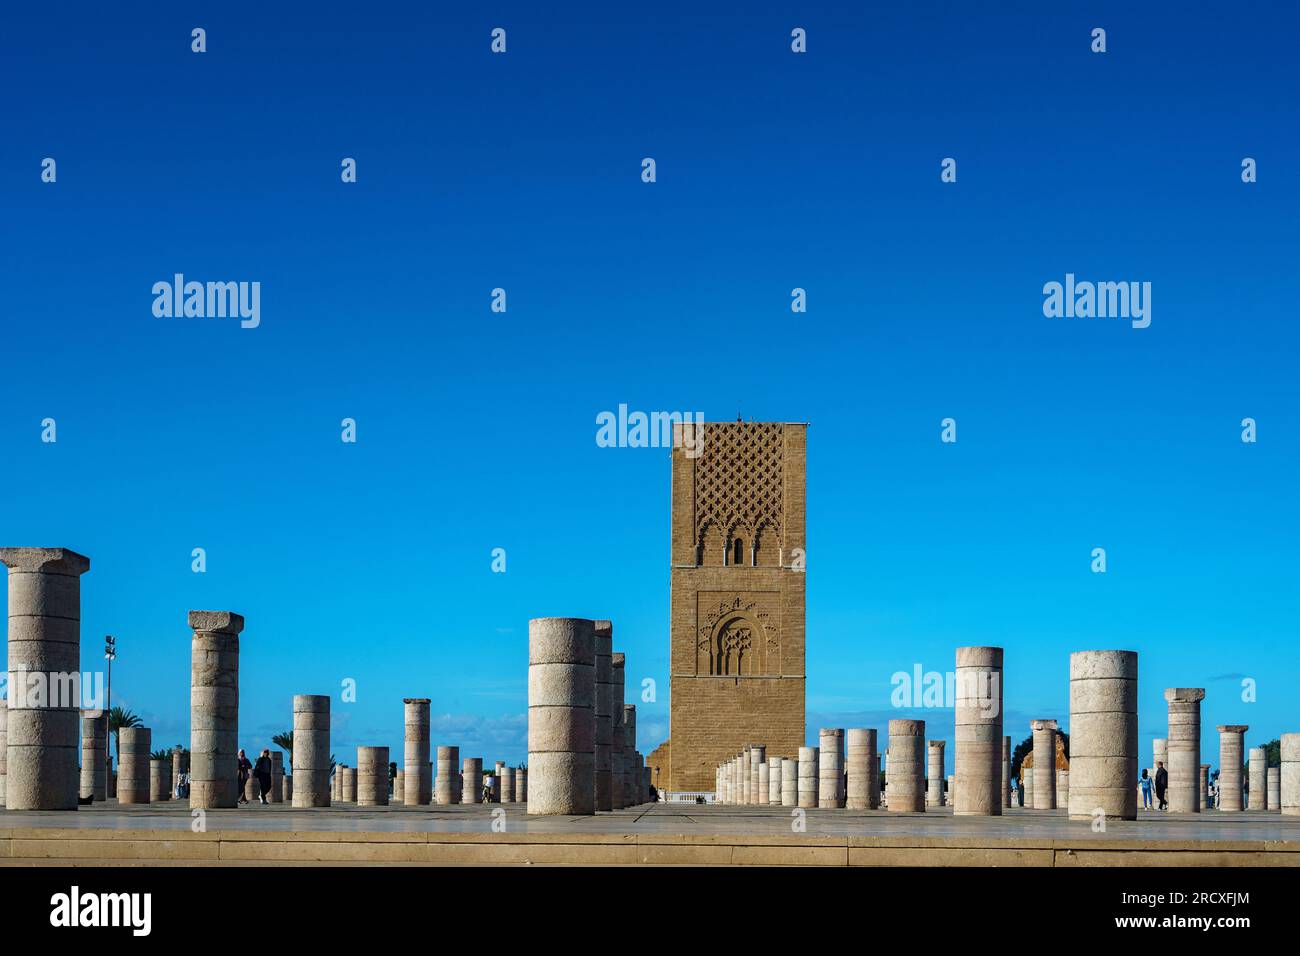 Maroc. Rabat. La magnifique Tour Hassan et ses colonnes de pierre sur l’esplanade Yacoub al-Mansour. Banque D'Images